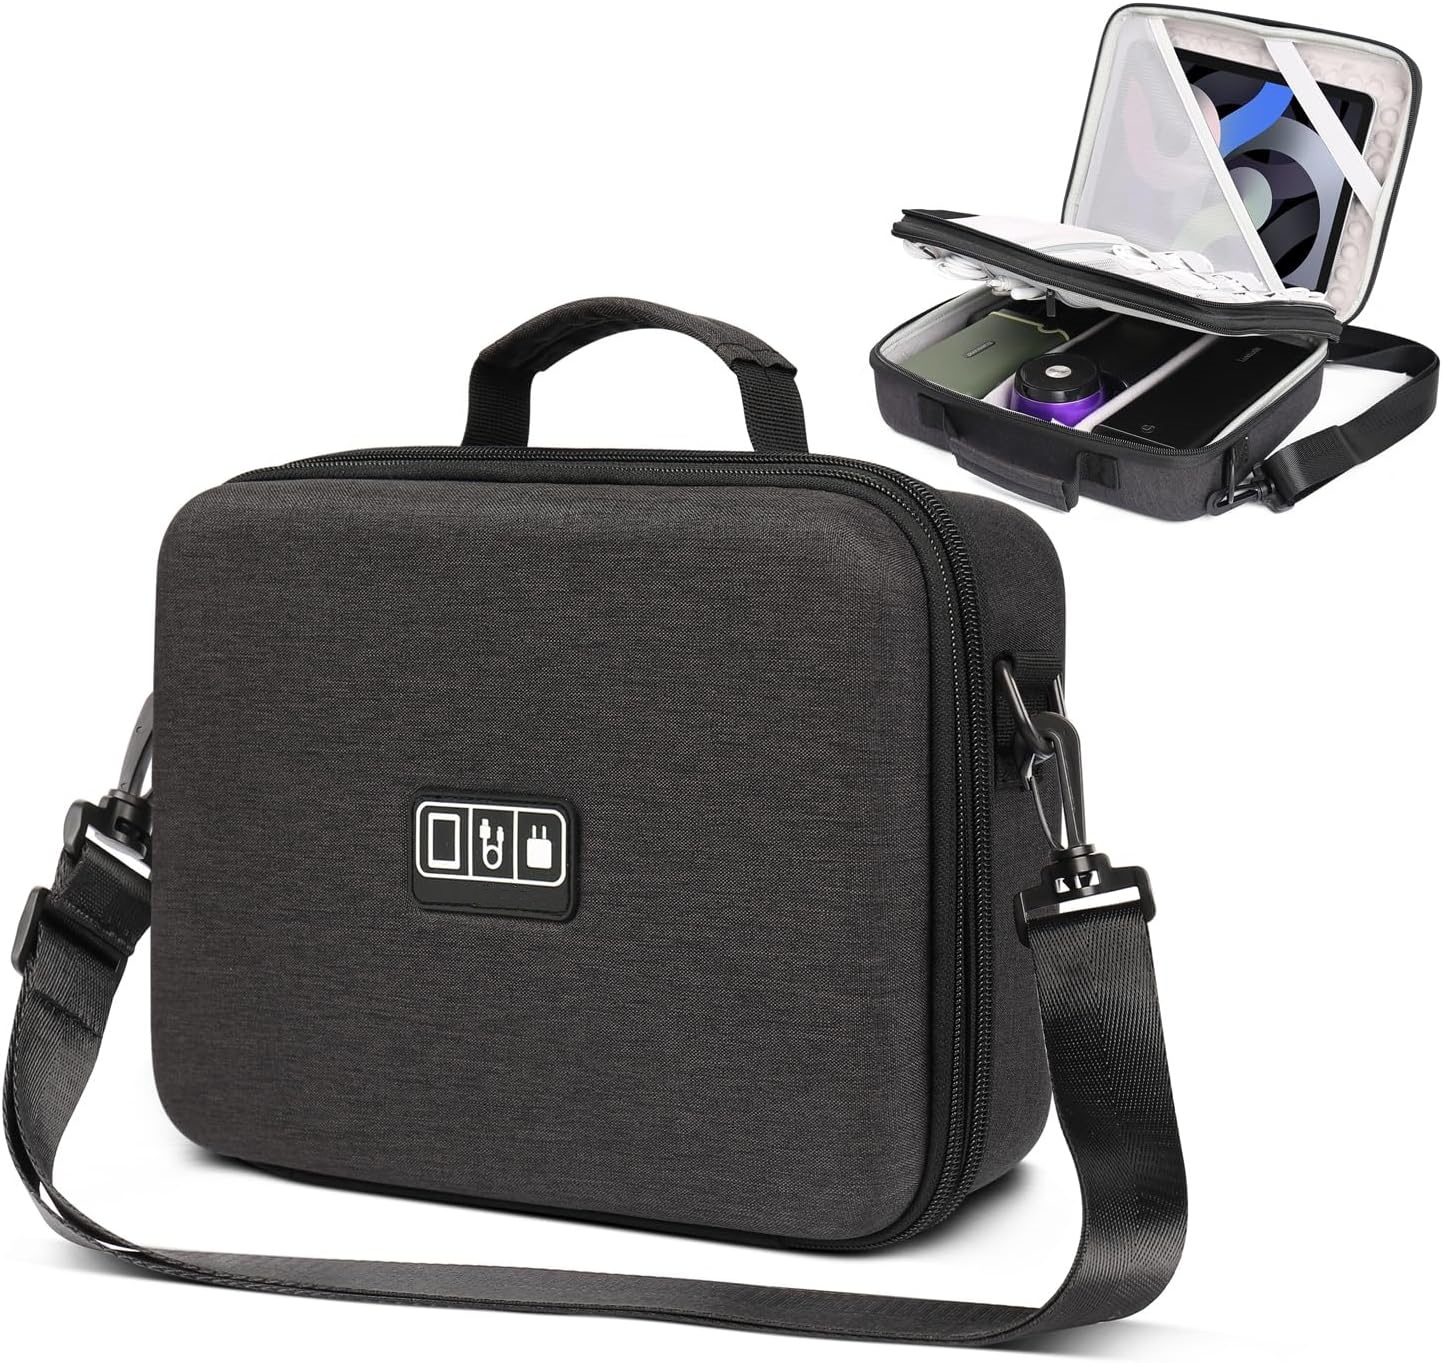 11'' ሃርድ ኬዝ ለ Mac Mini፣ Shockproof EVA Tech Bag፣ የጉዞ ኬብል አደራጅ ቦርሳ ከትከሻ ማሰሪያ ጋር፣ ትልቅ መያዣ